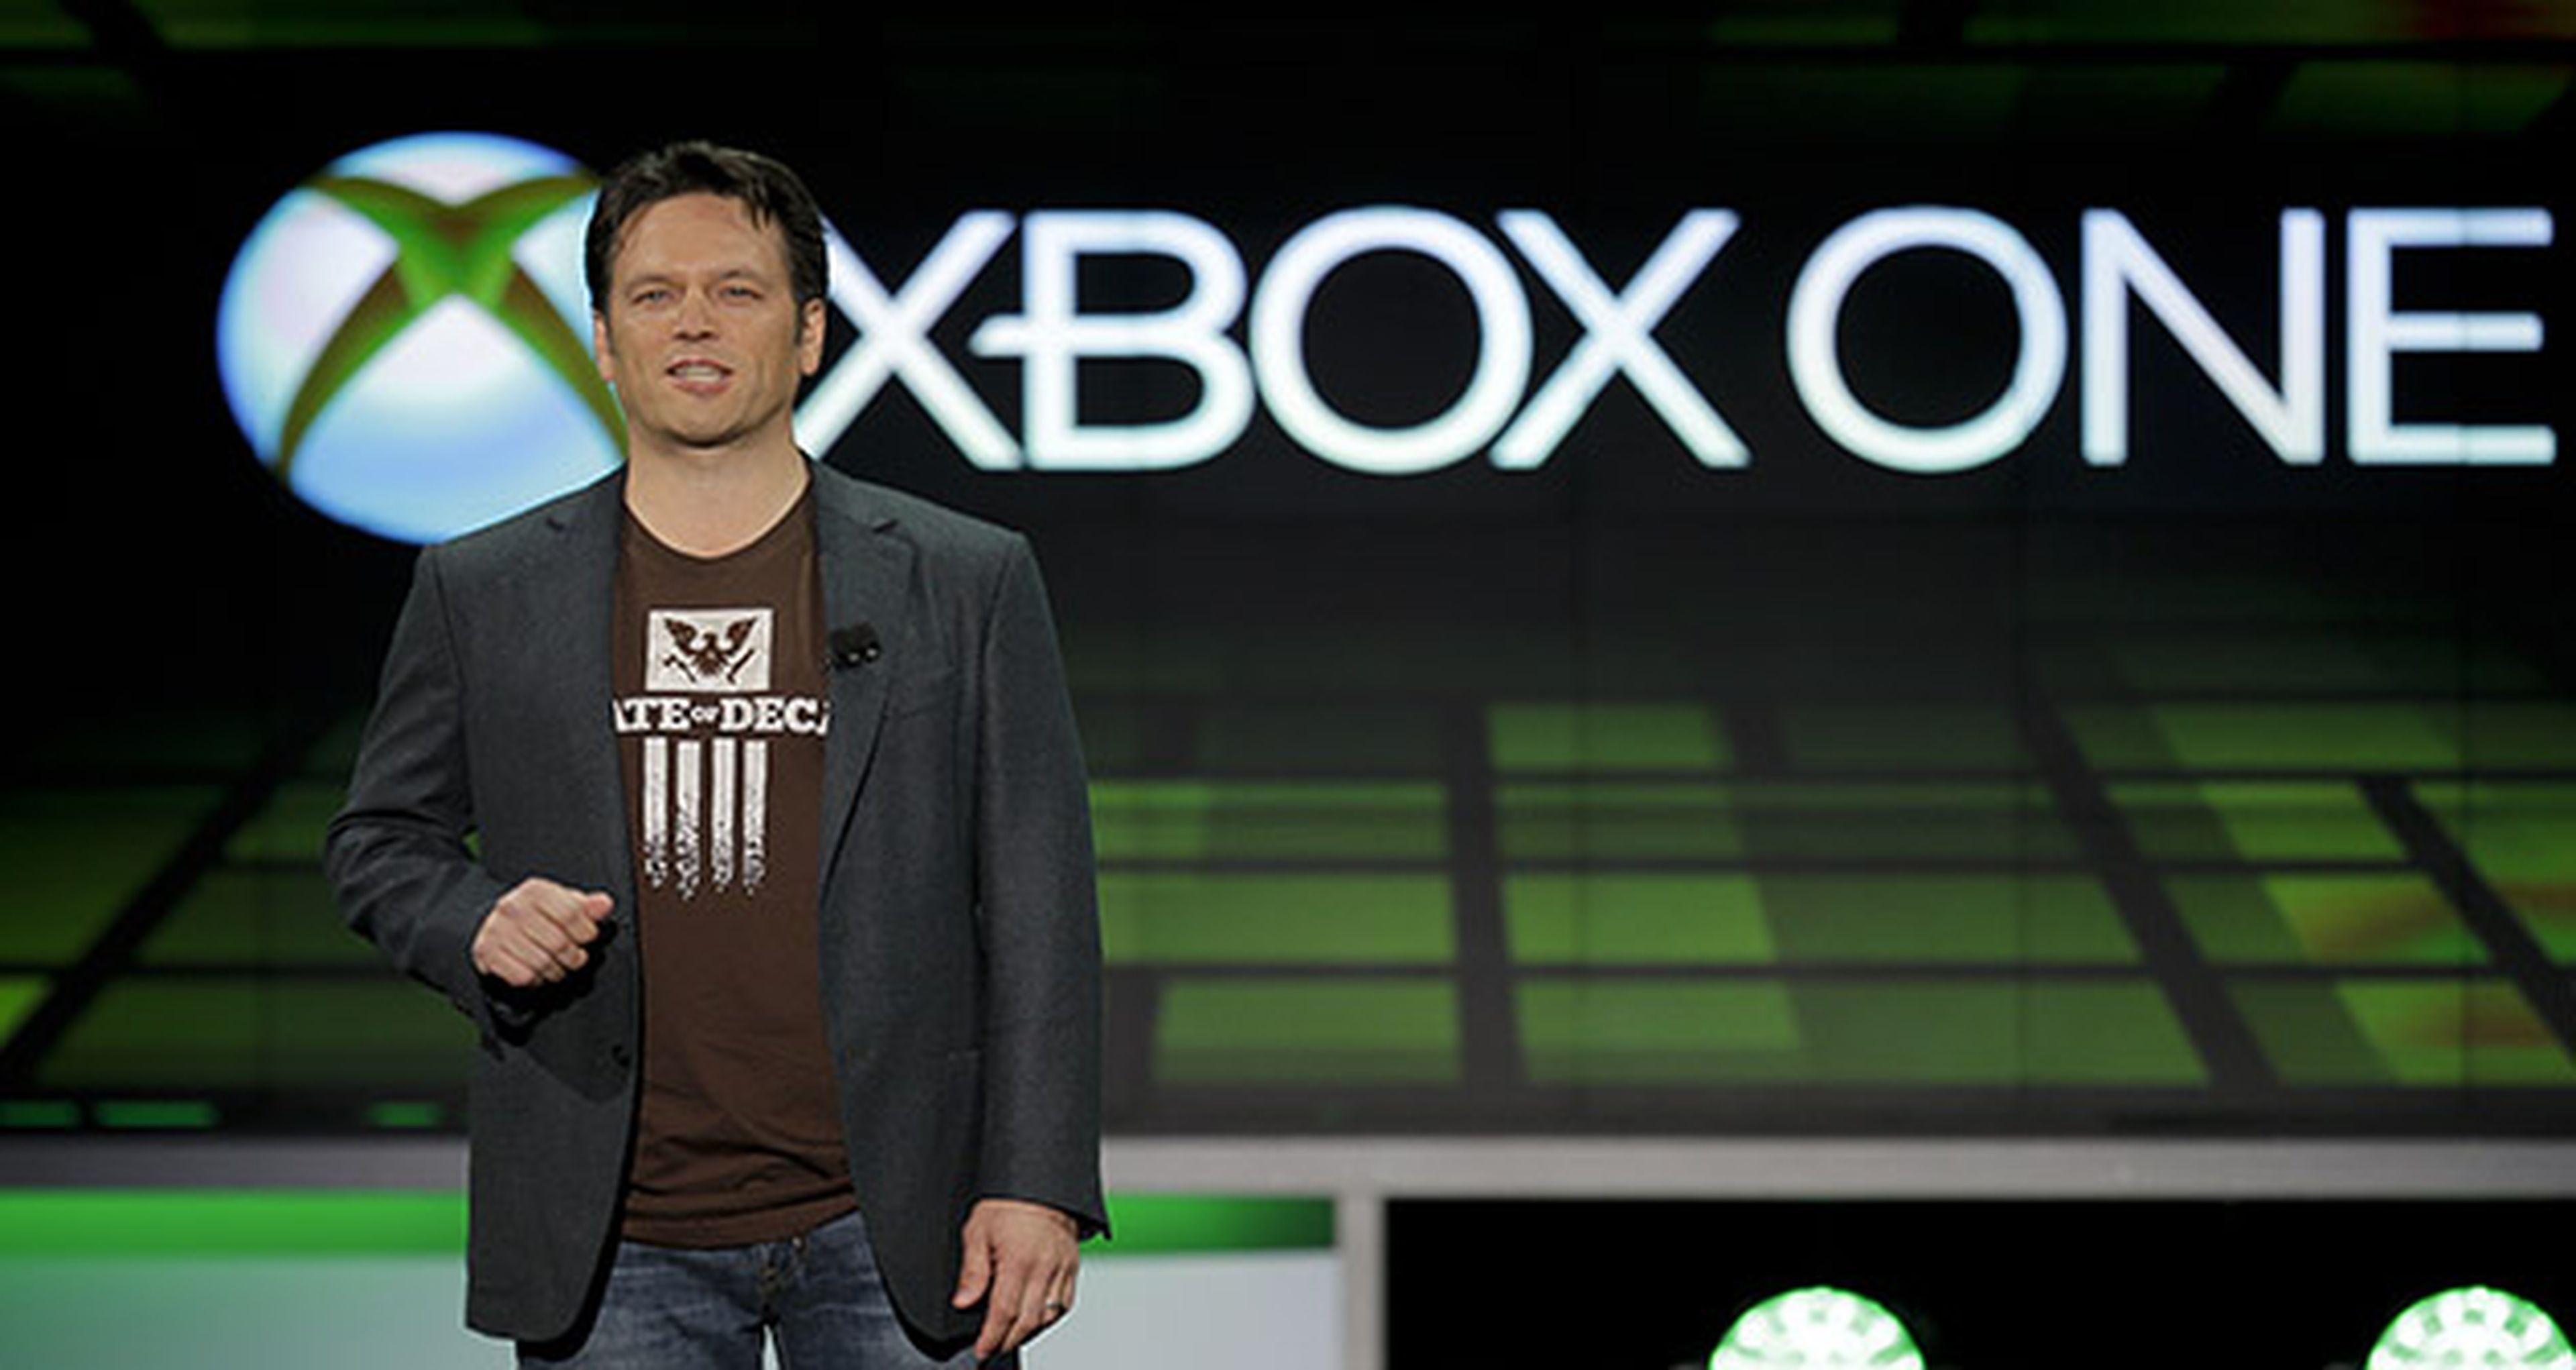 Phil Spencer se felicita por el gran año de Xbox One... y también de PS4